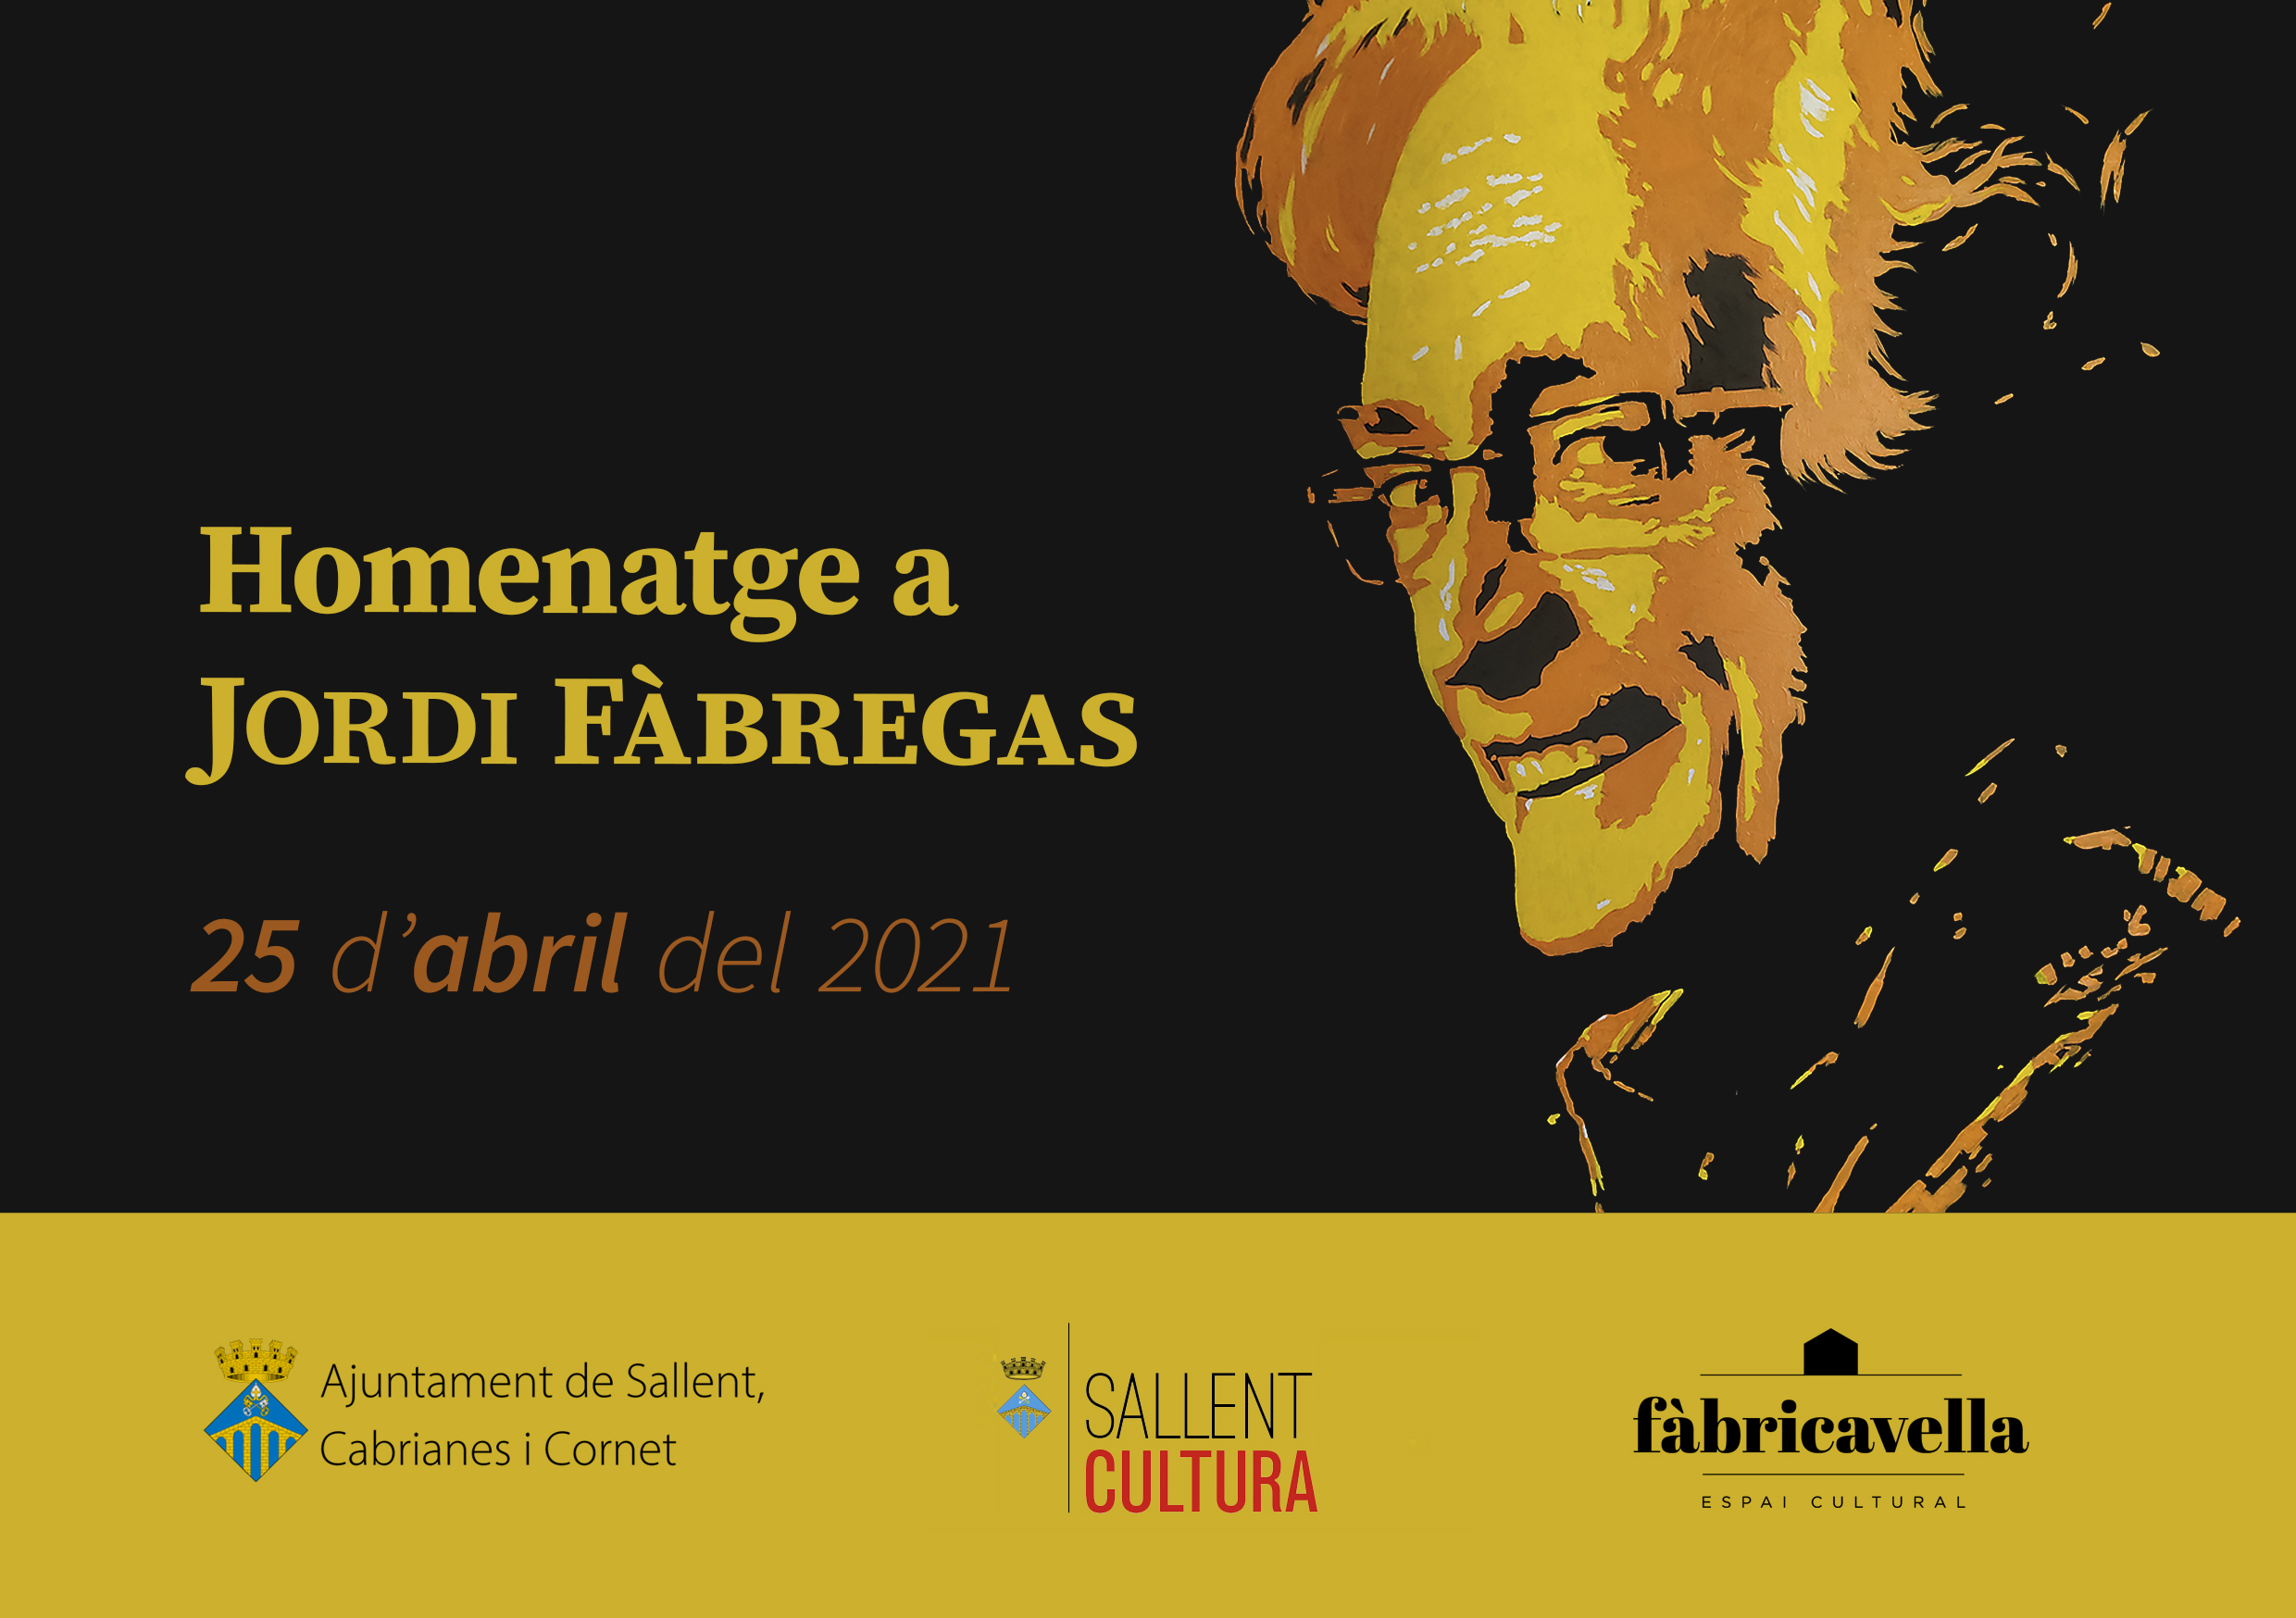 Cartell de l'homenatge a Jordi Fàbregas del 25 d'abril de 2021